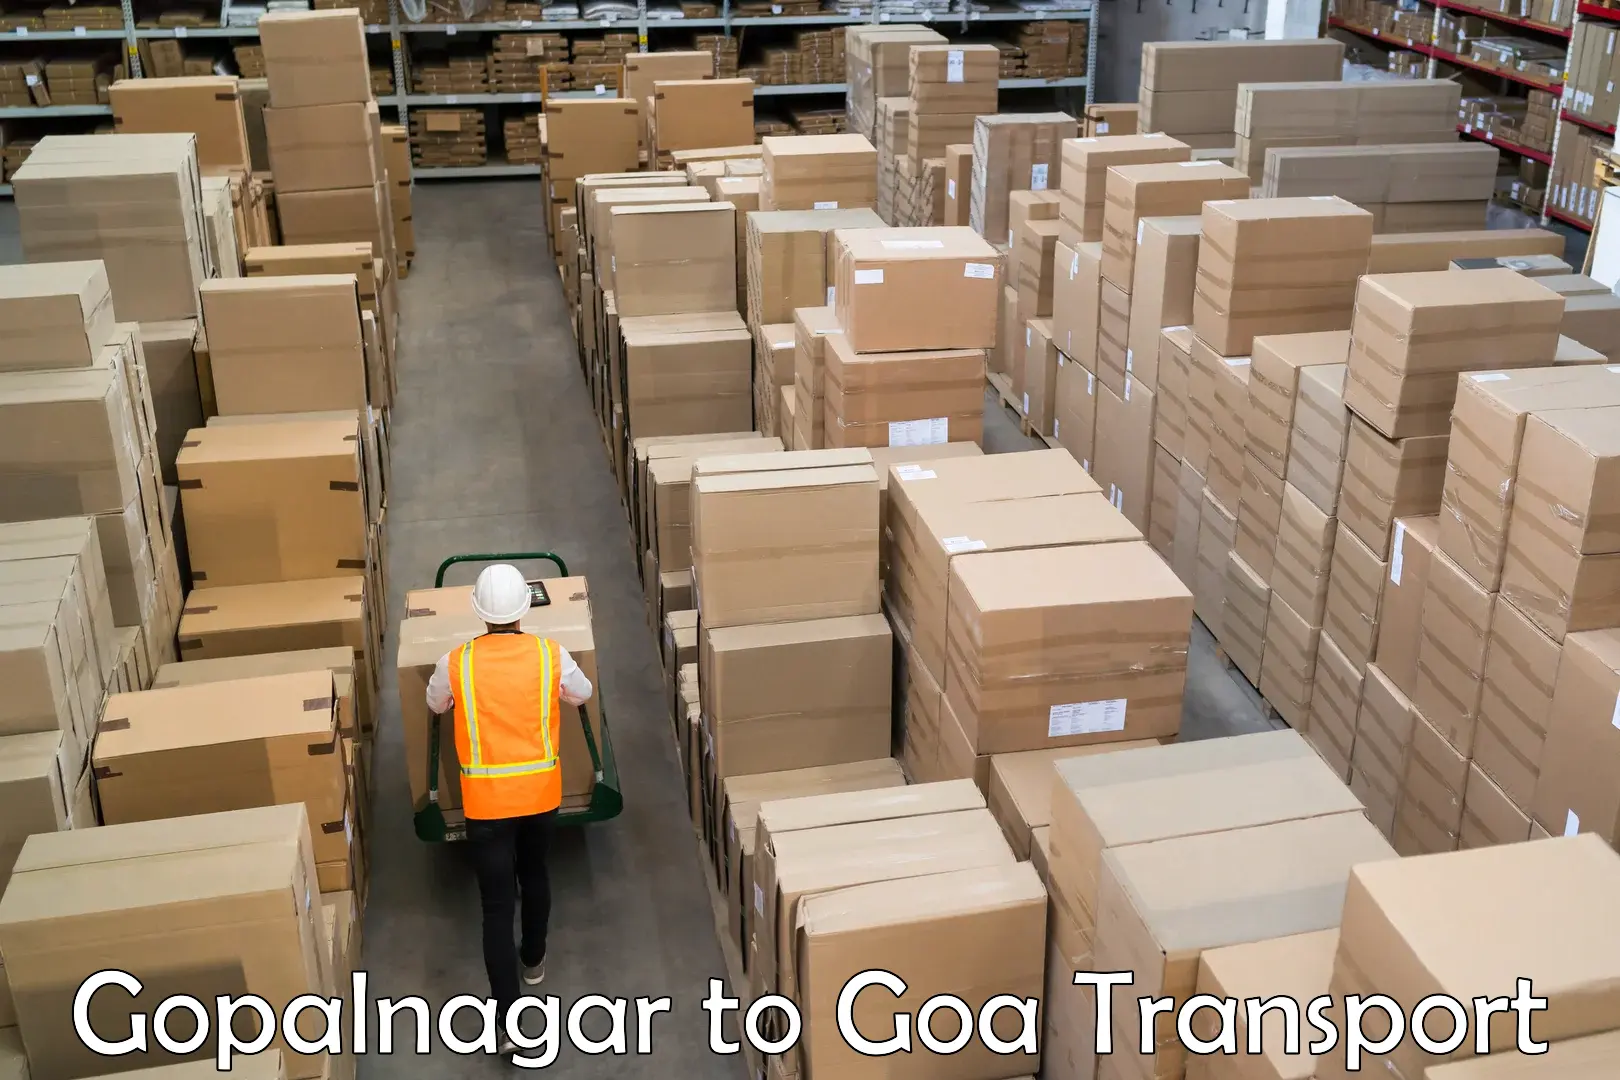 Online transport service Gopalnagar to Margao